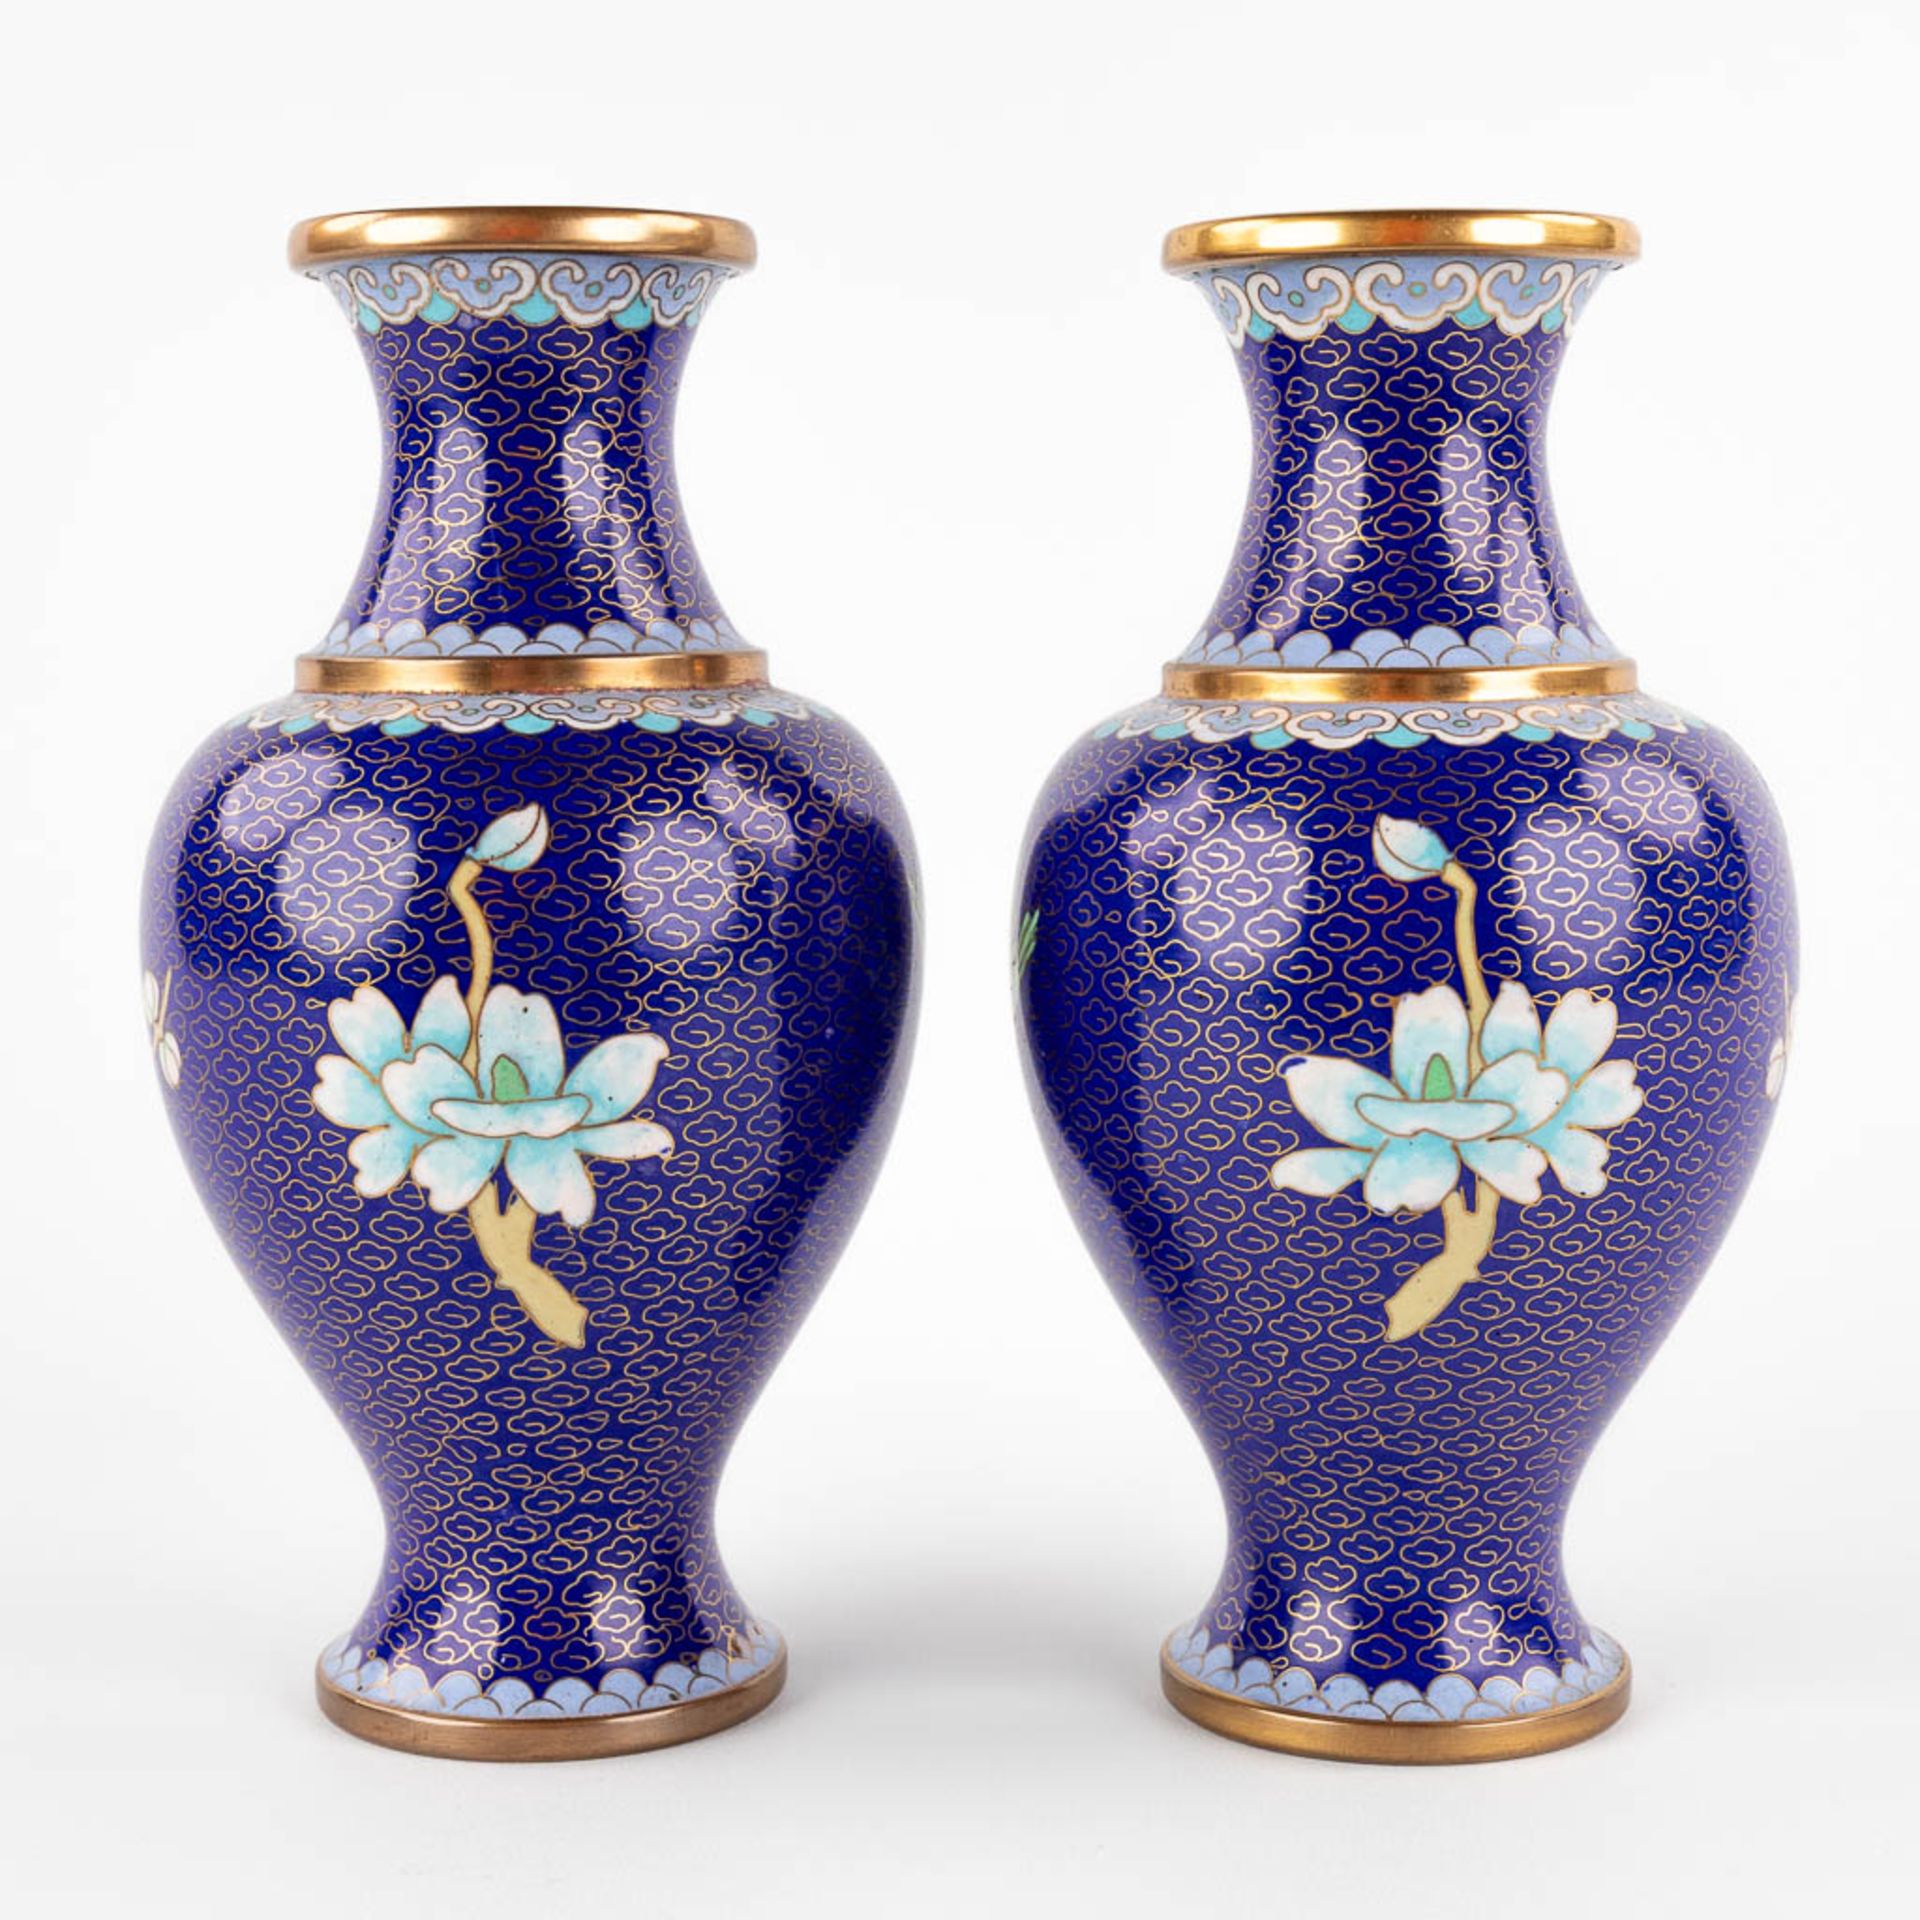 Five Oriental vases, cloisonné bronze. 20th C. (H:25 cm) - Image 13 of 27